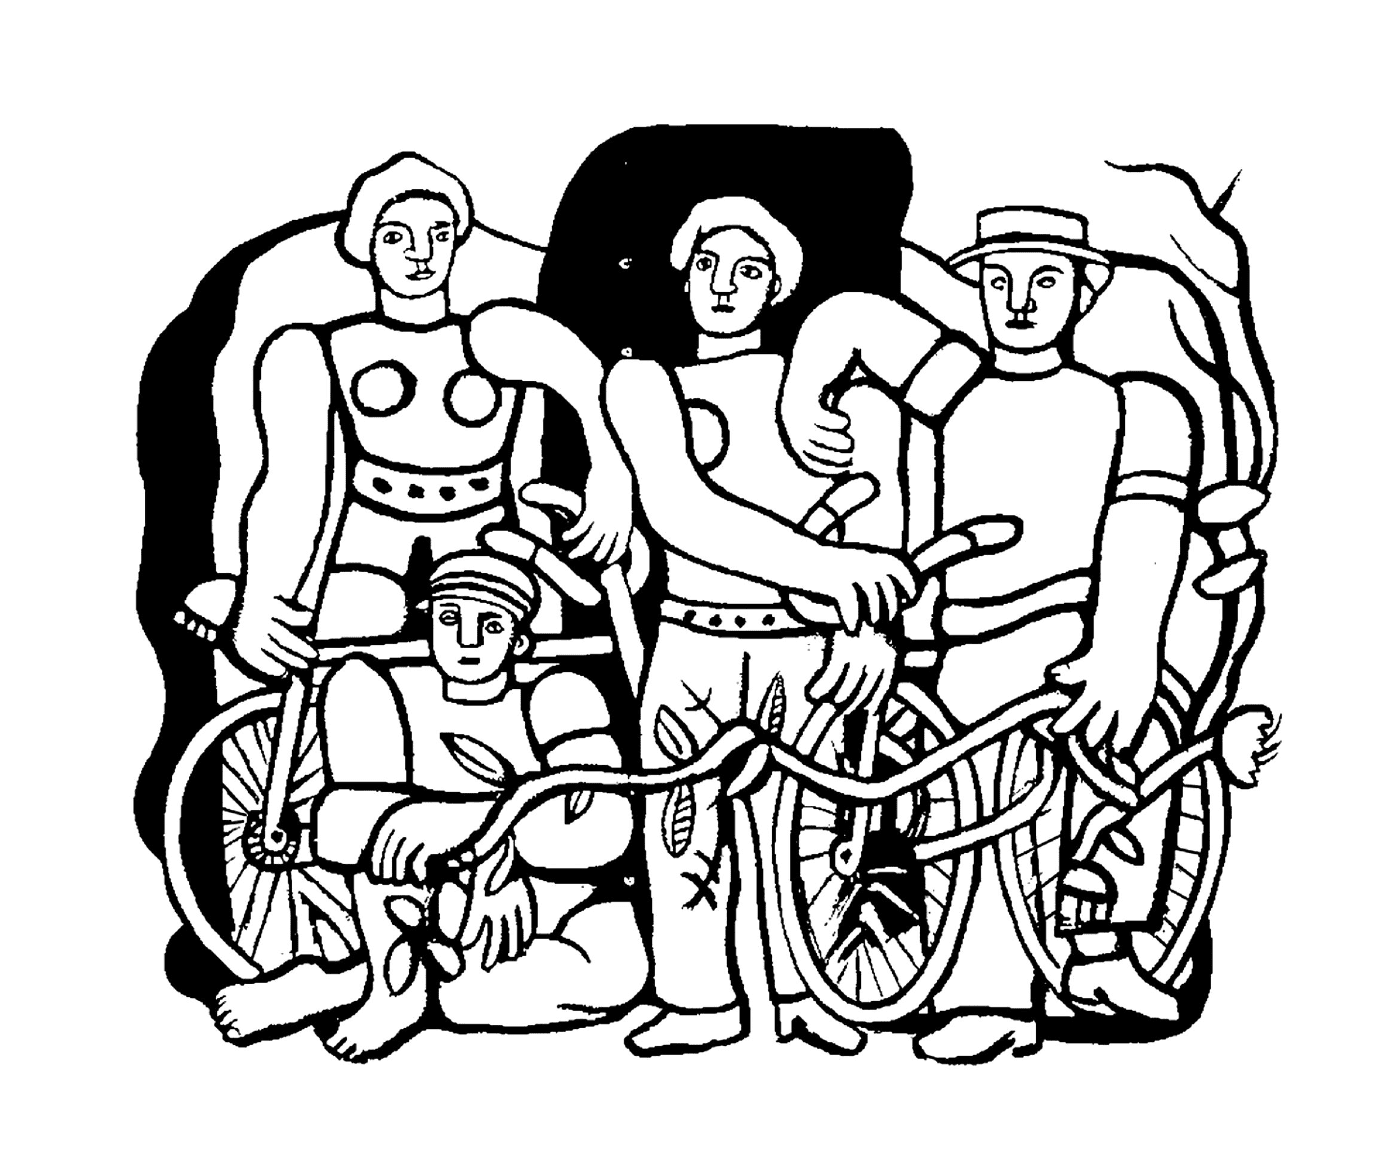  一群骑自行车的人 